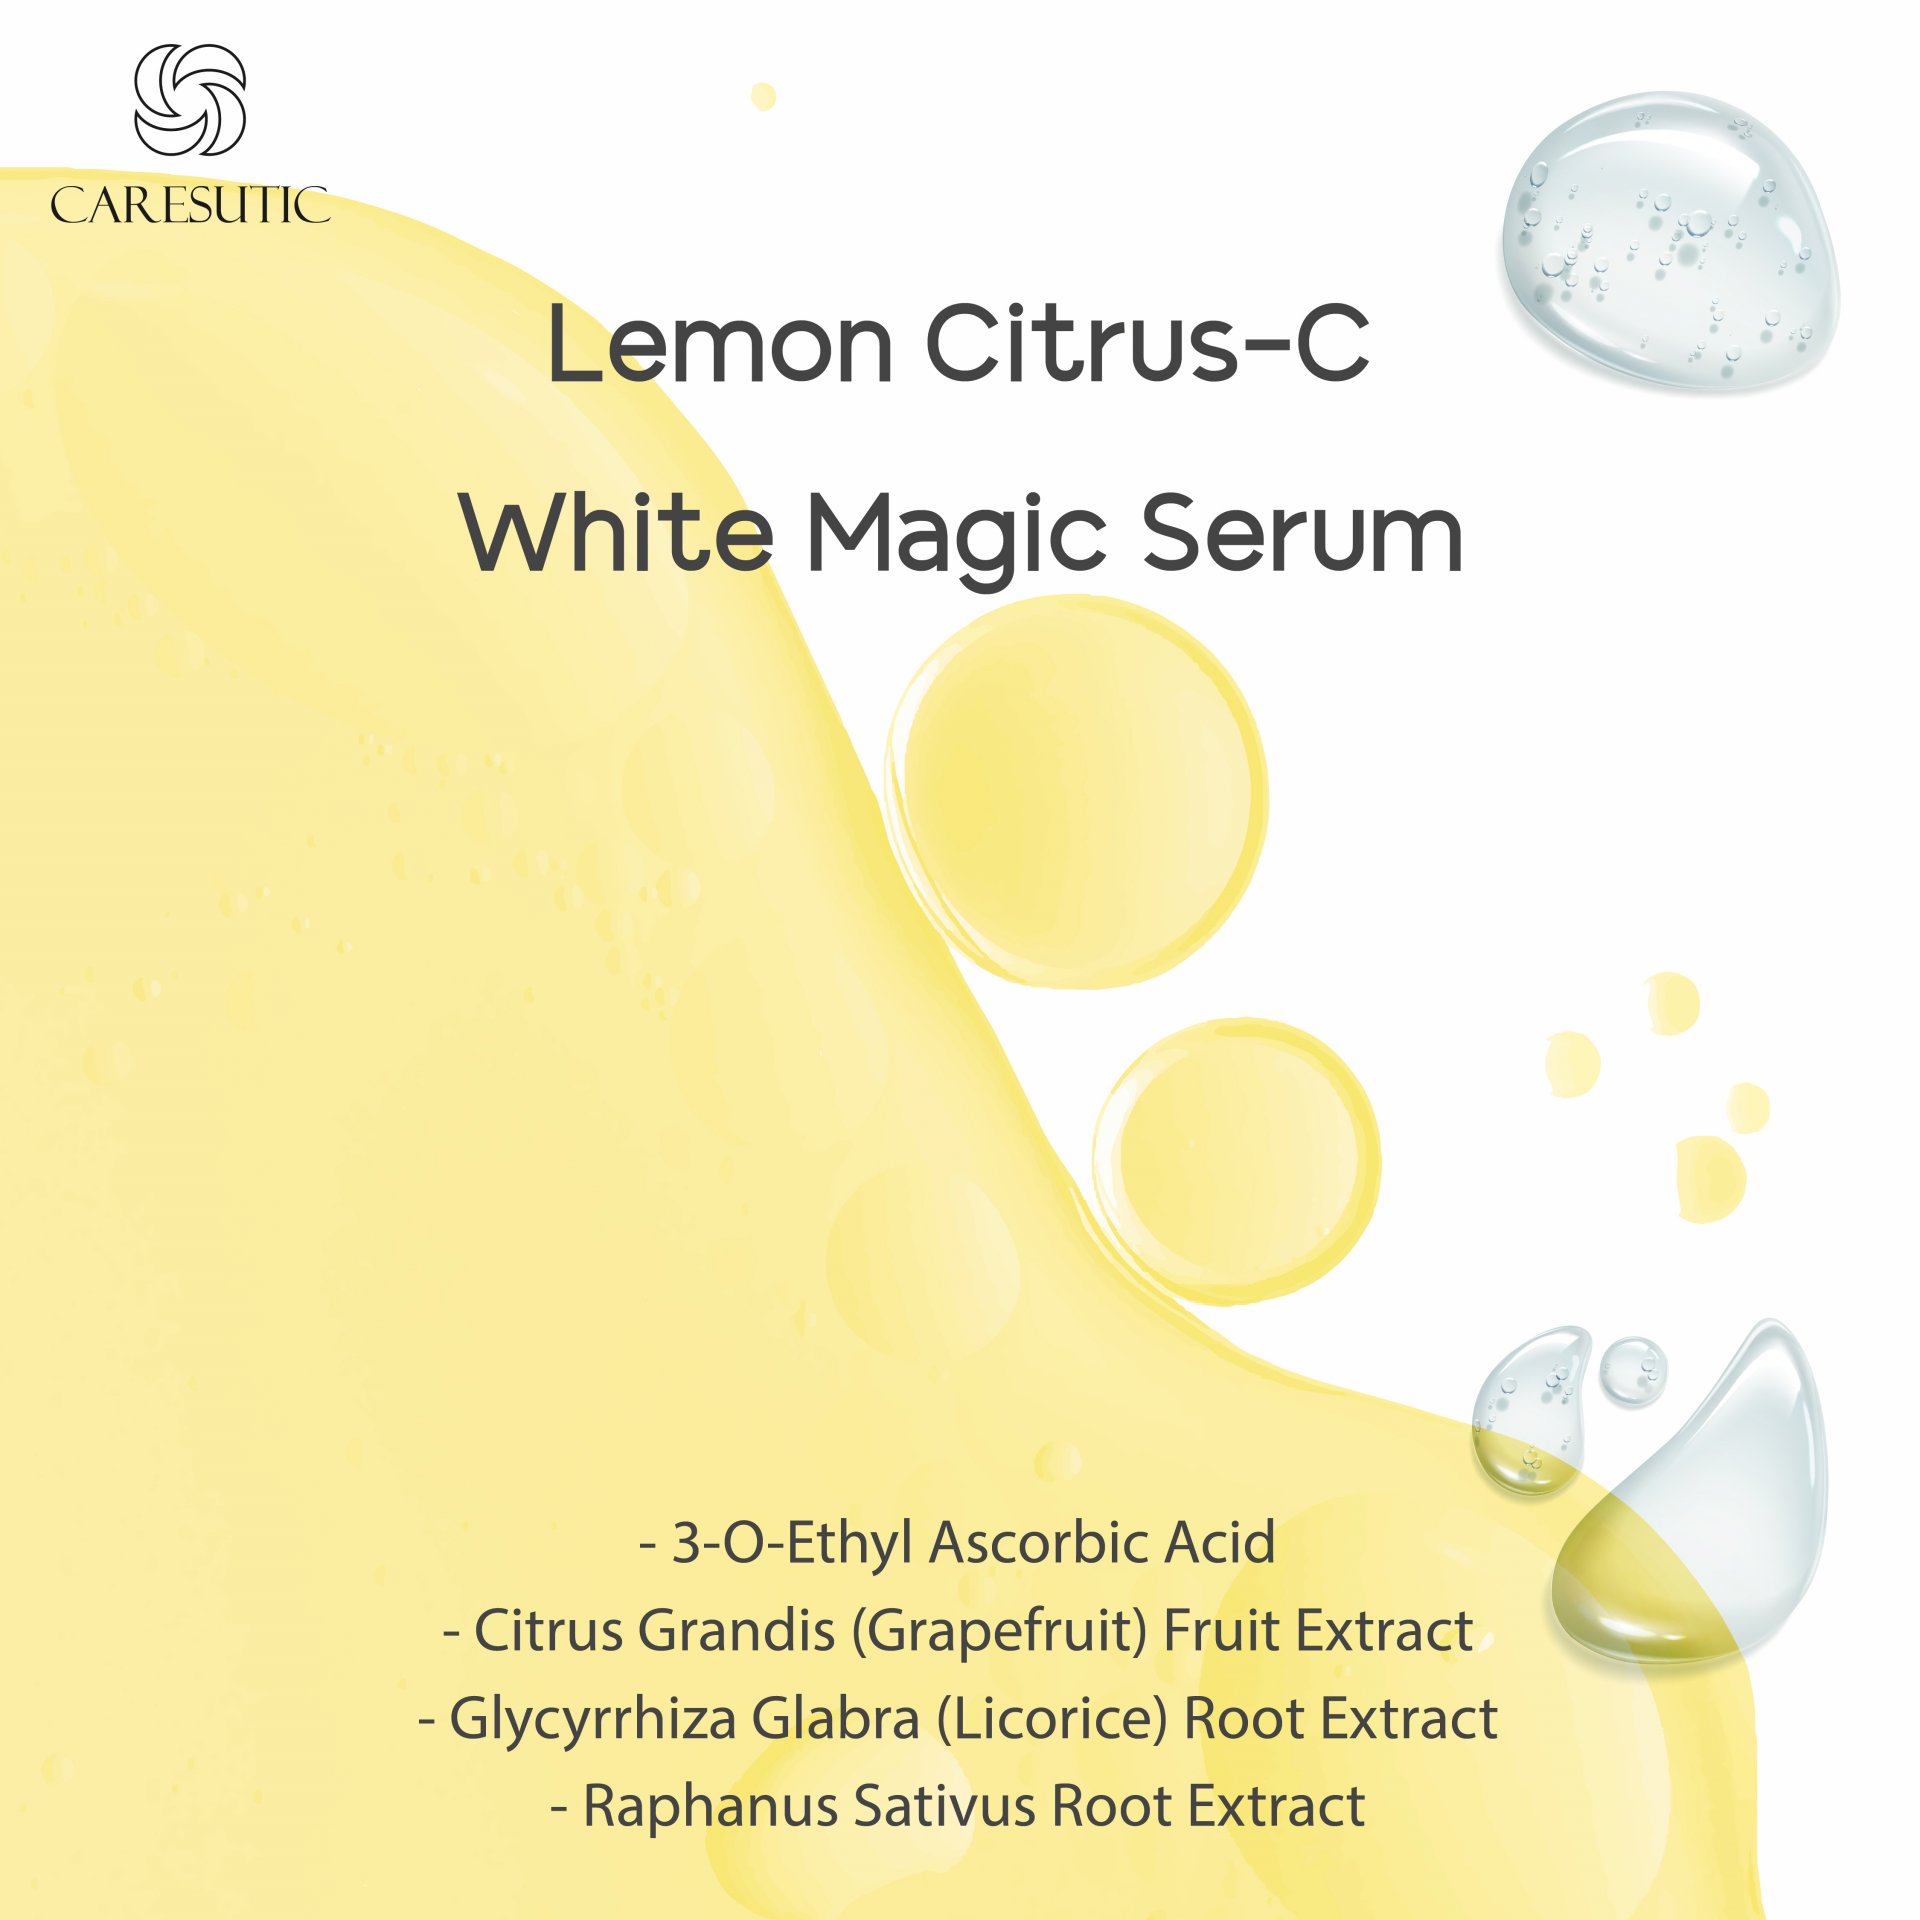 Lemon Citrus-C White Magic Serum